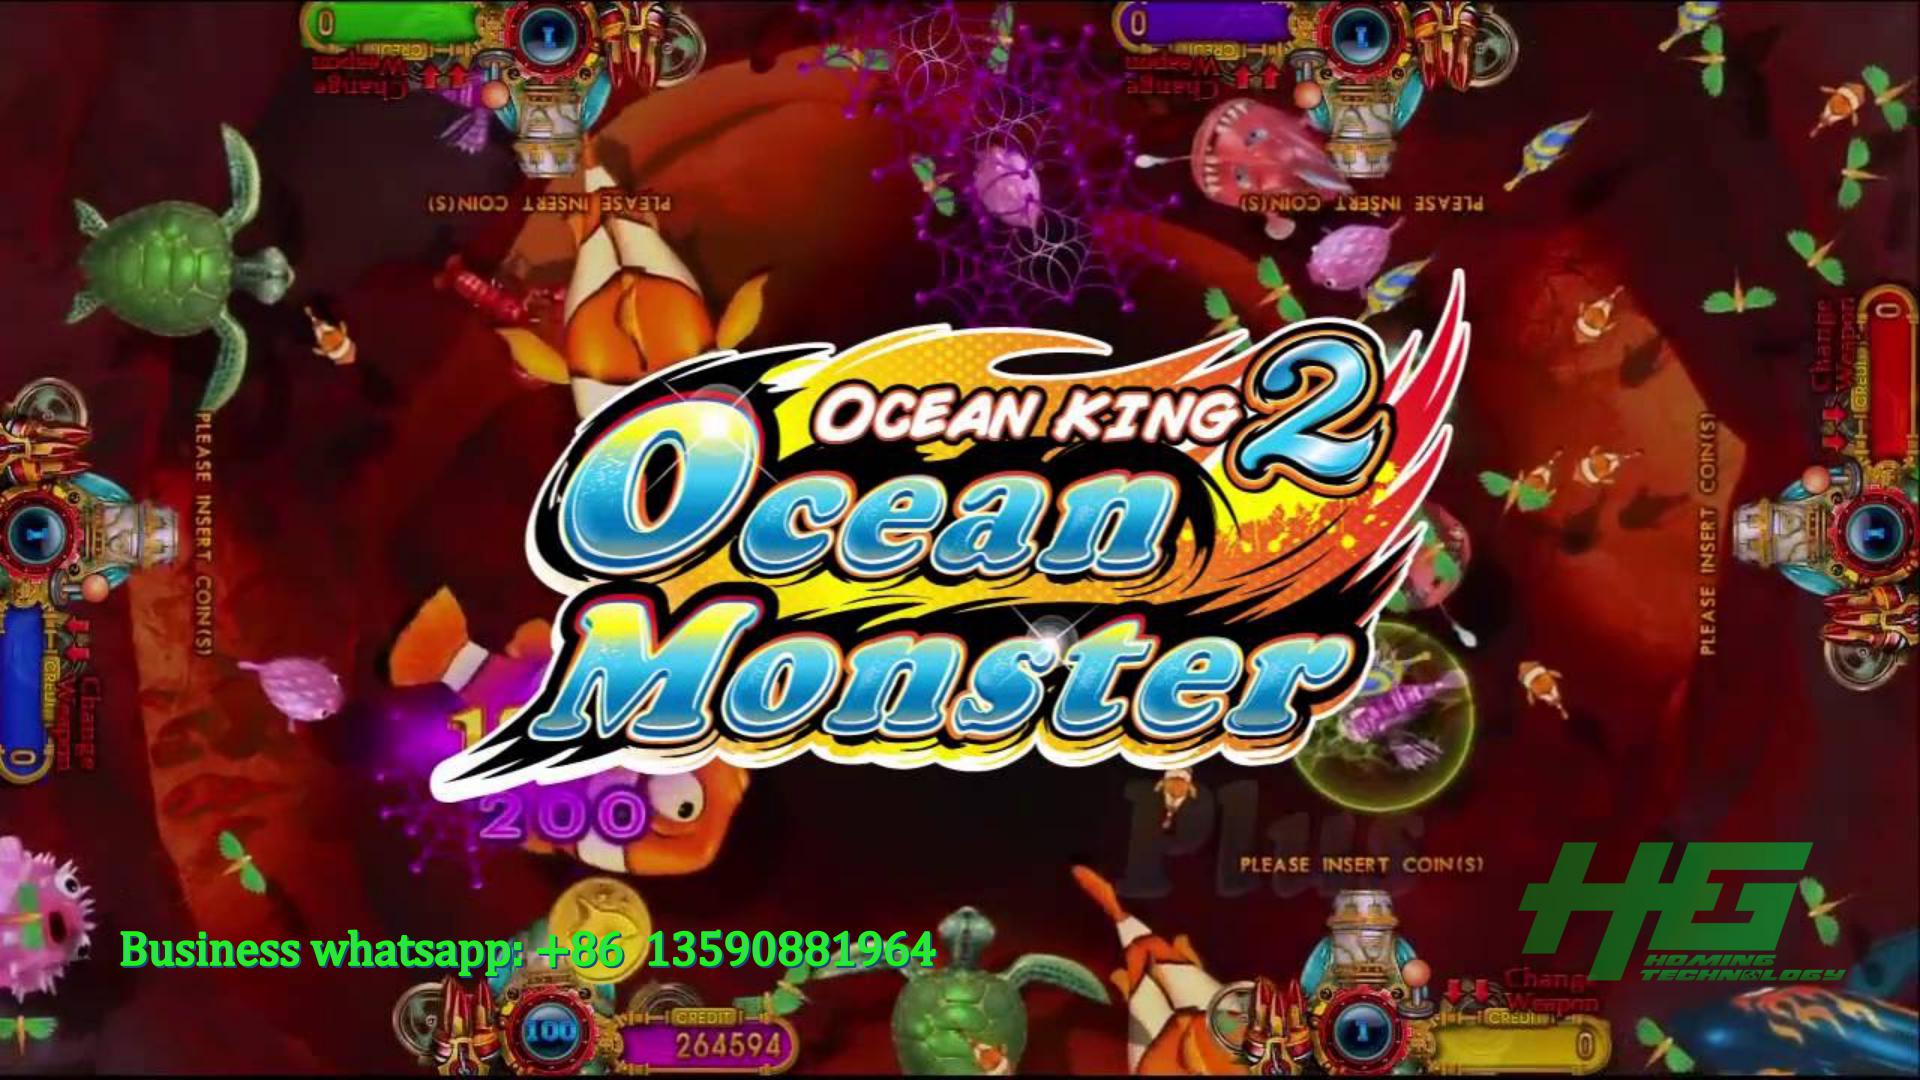 IGS Original Ocean Monster Fishing Game,Ocean Monster Fish Hunter Game Machine Demo